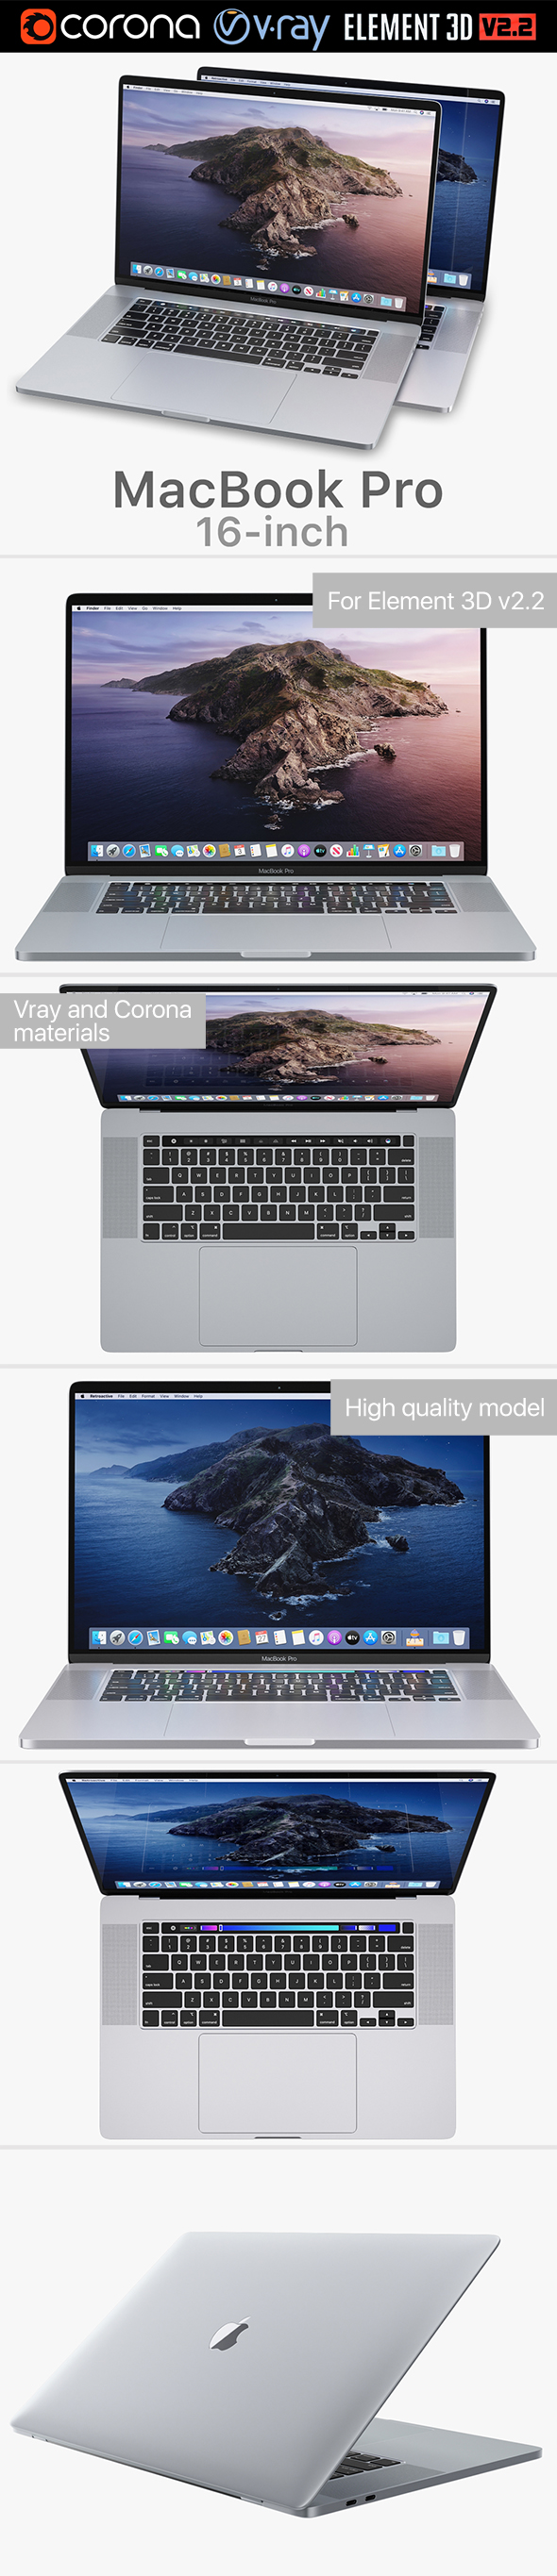 Apple MacBook Pro - 3Docean 25161612